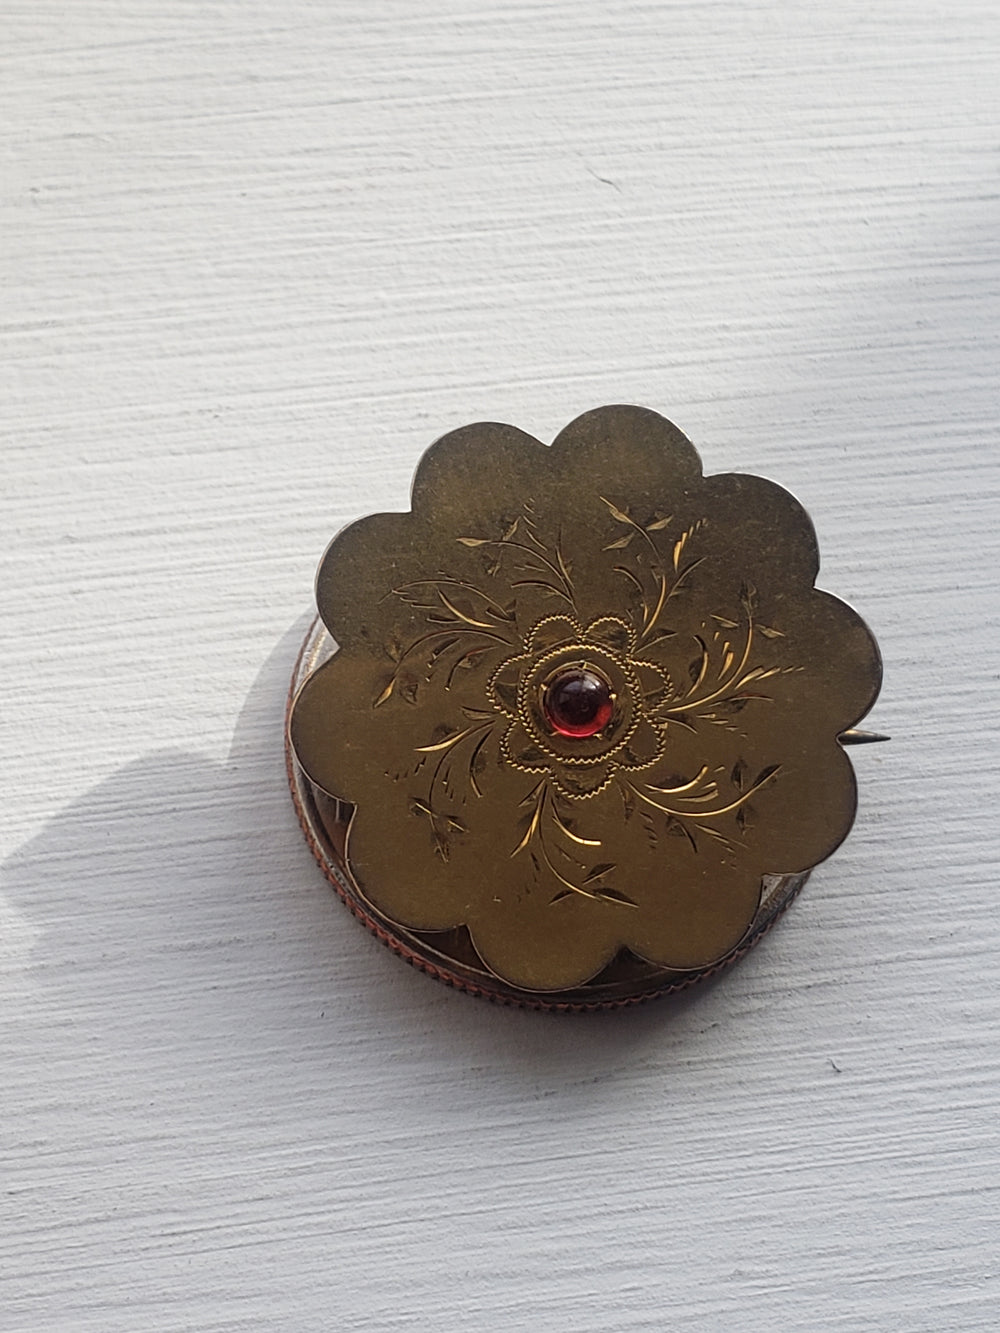 Engraved Garnet Gold Filled Brooch / Victorian Engraved Floral Brooch / Foil Backed Garnet Brooch